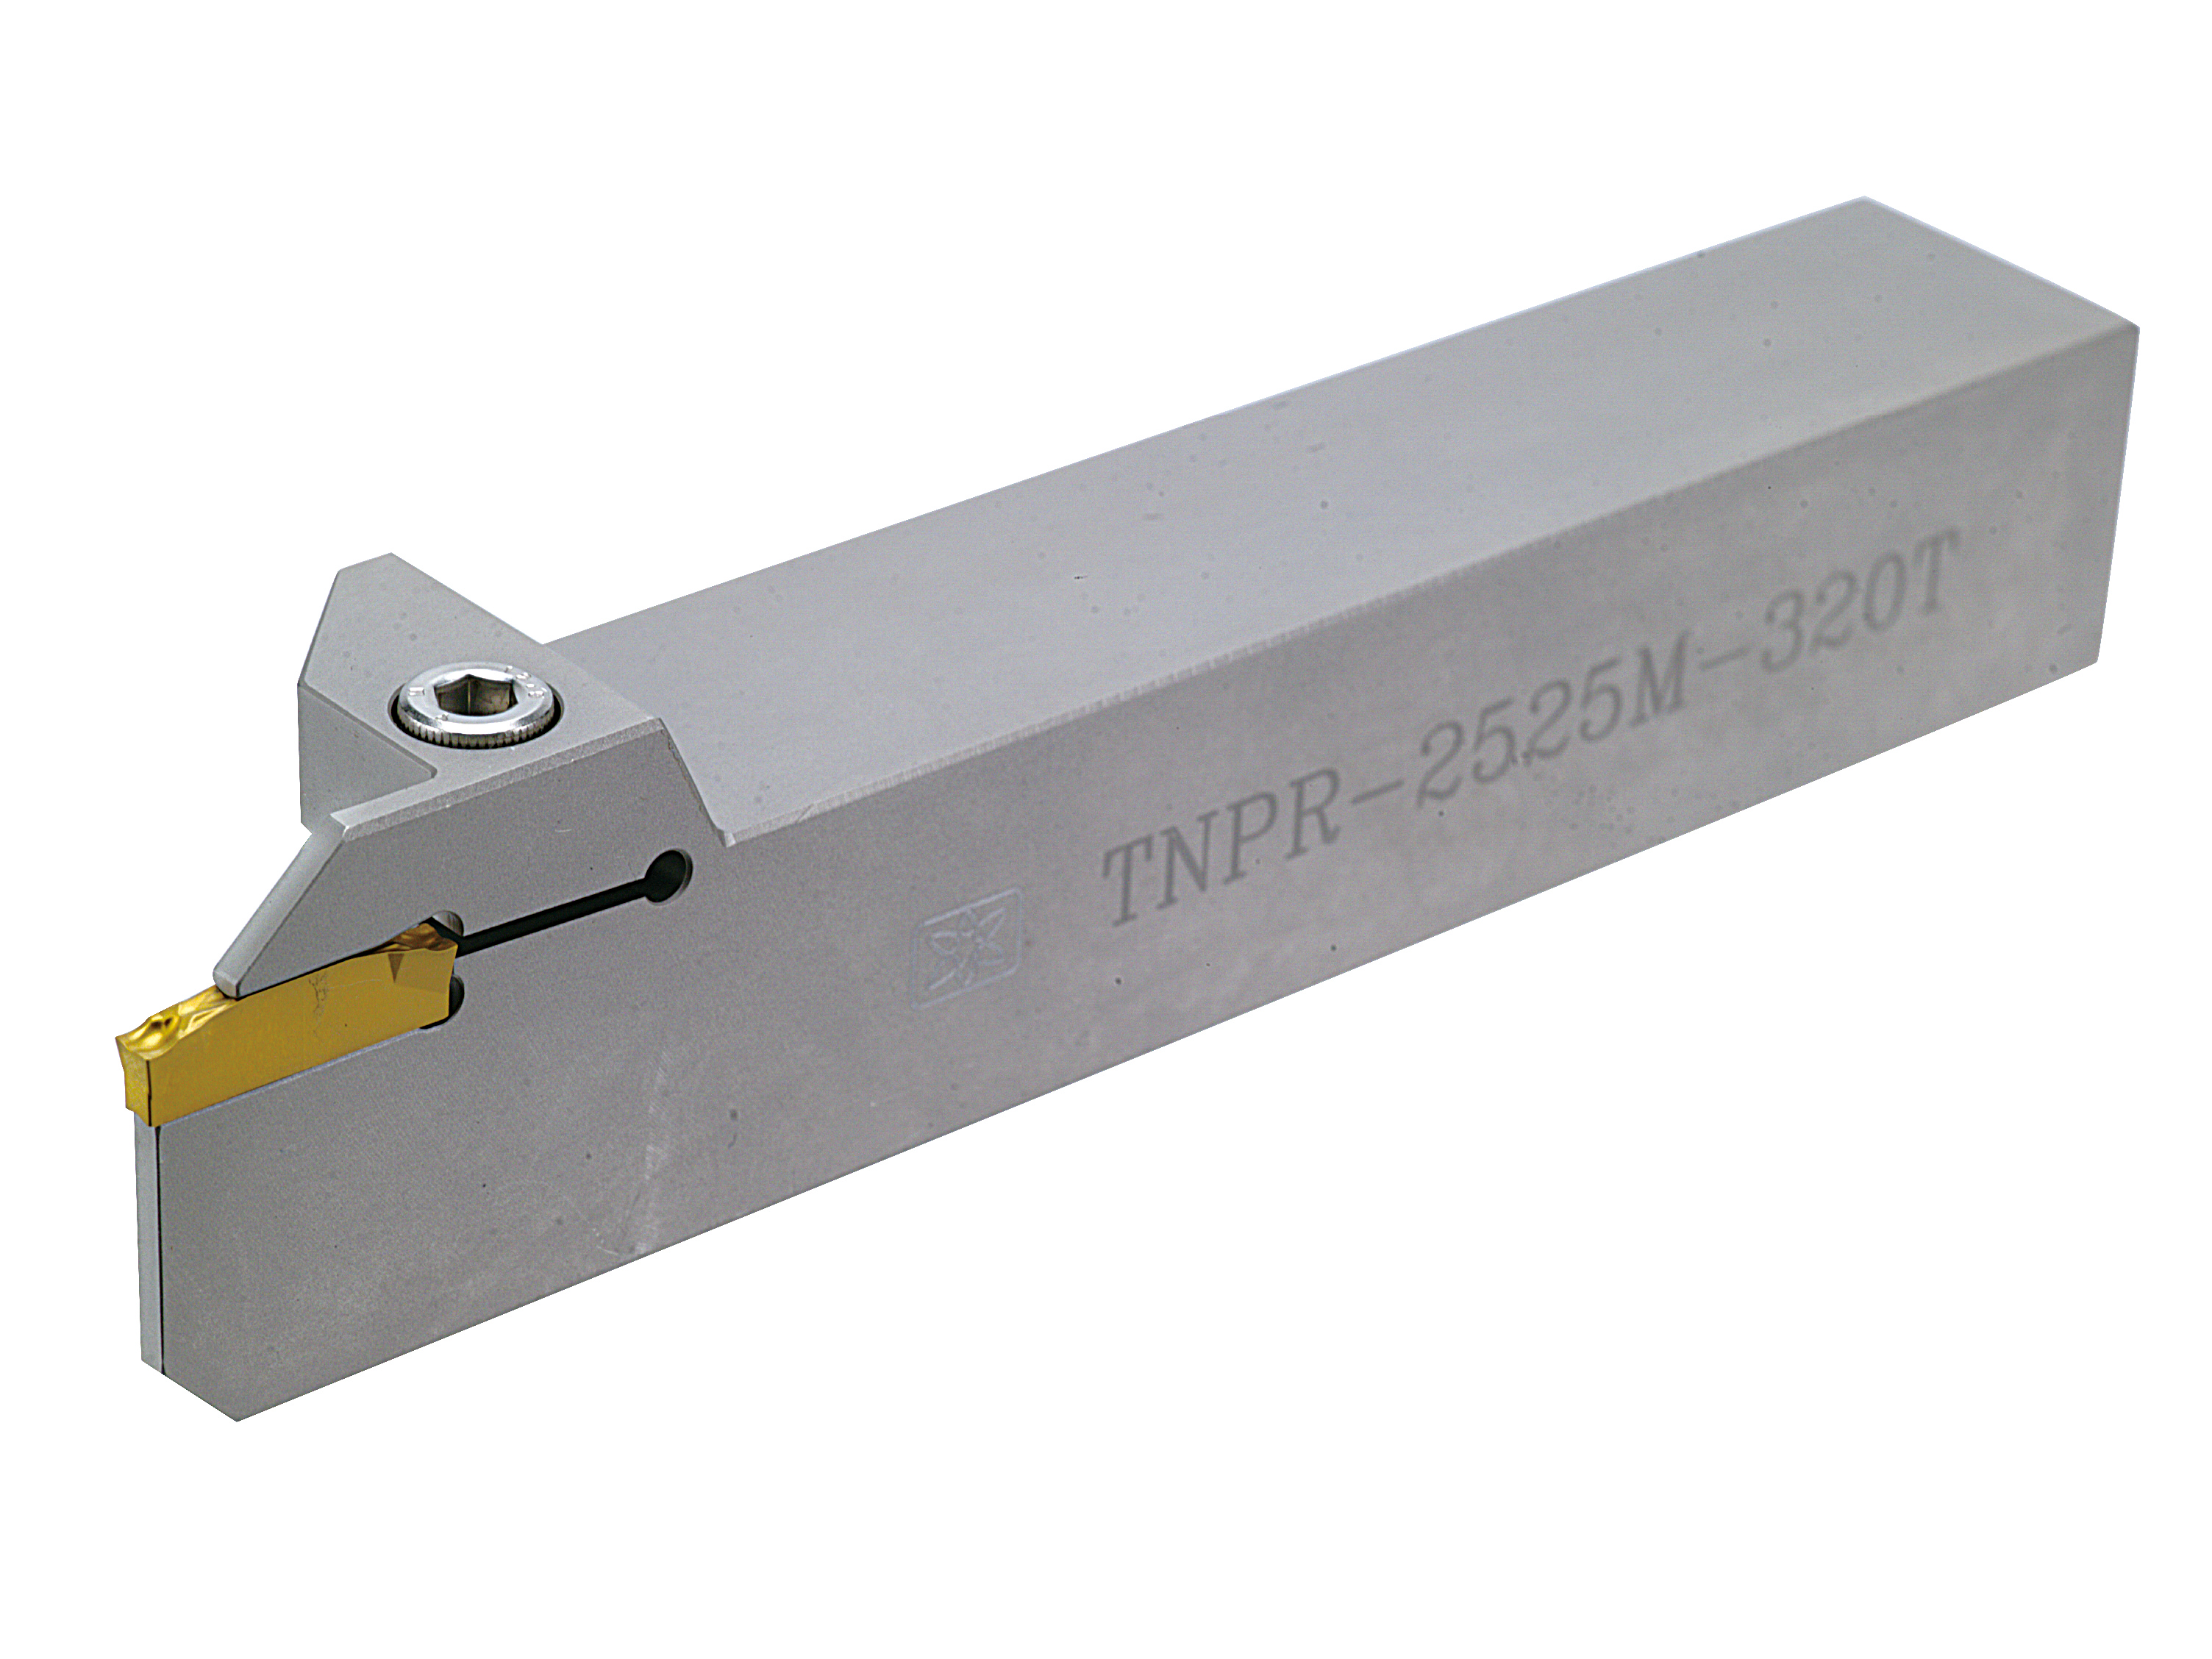 TNPR (TN300...) External Groovin Tool Holder